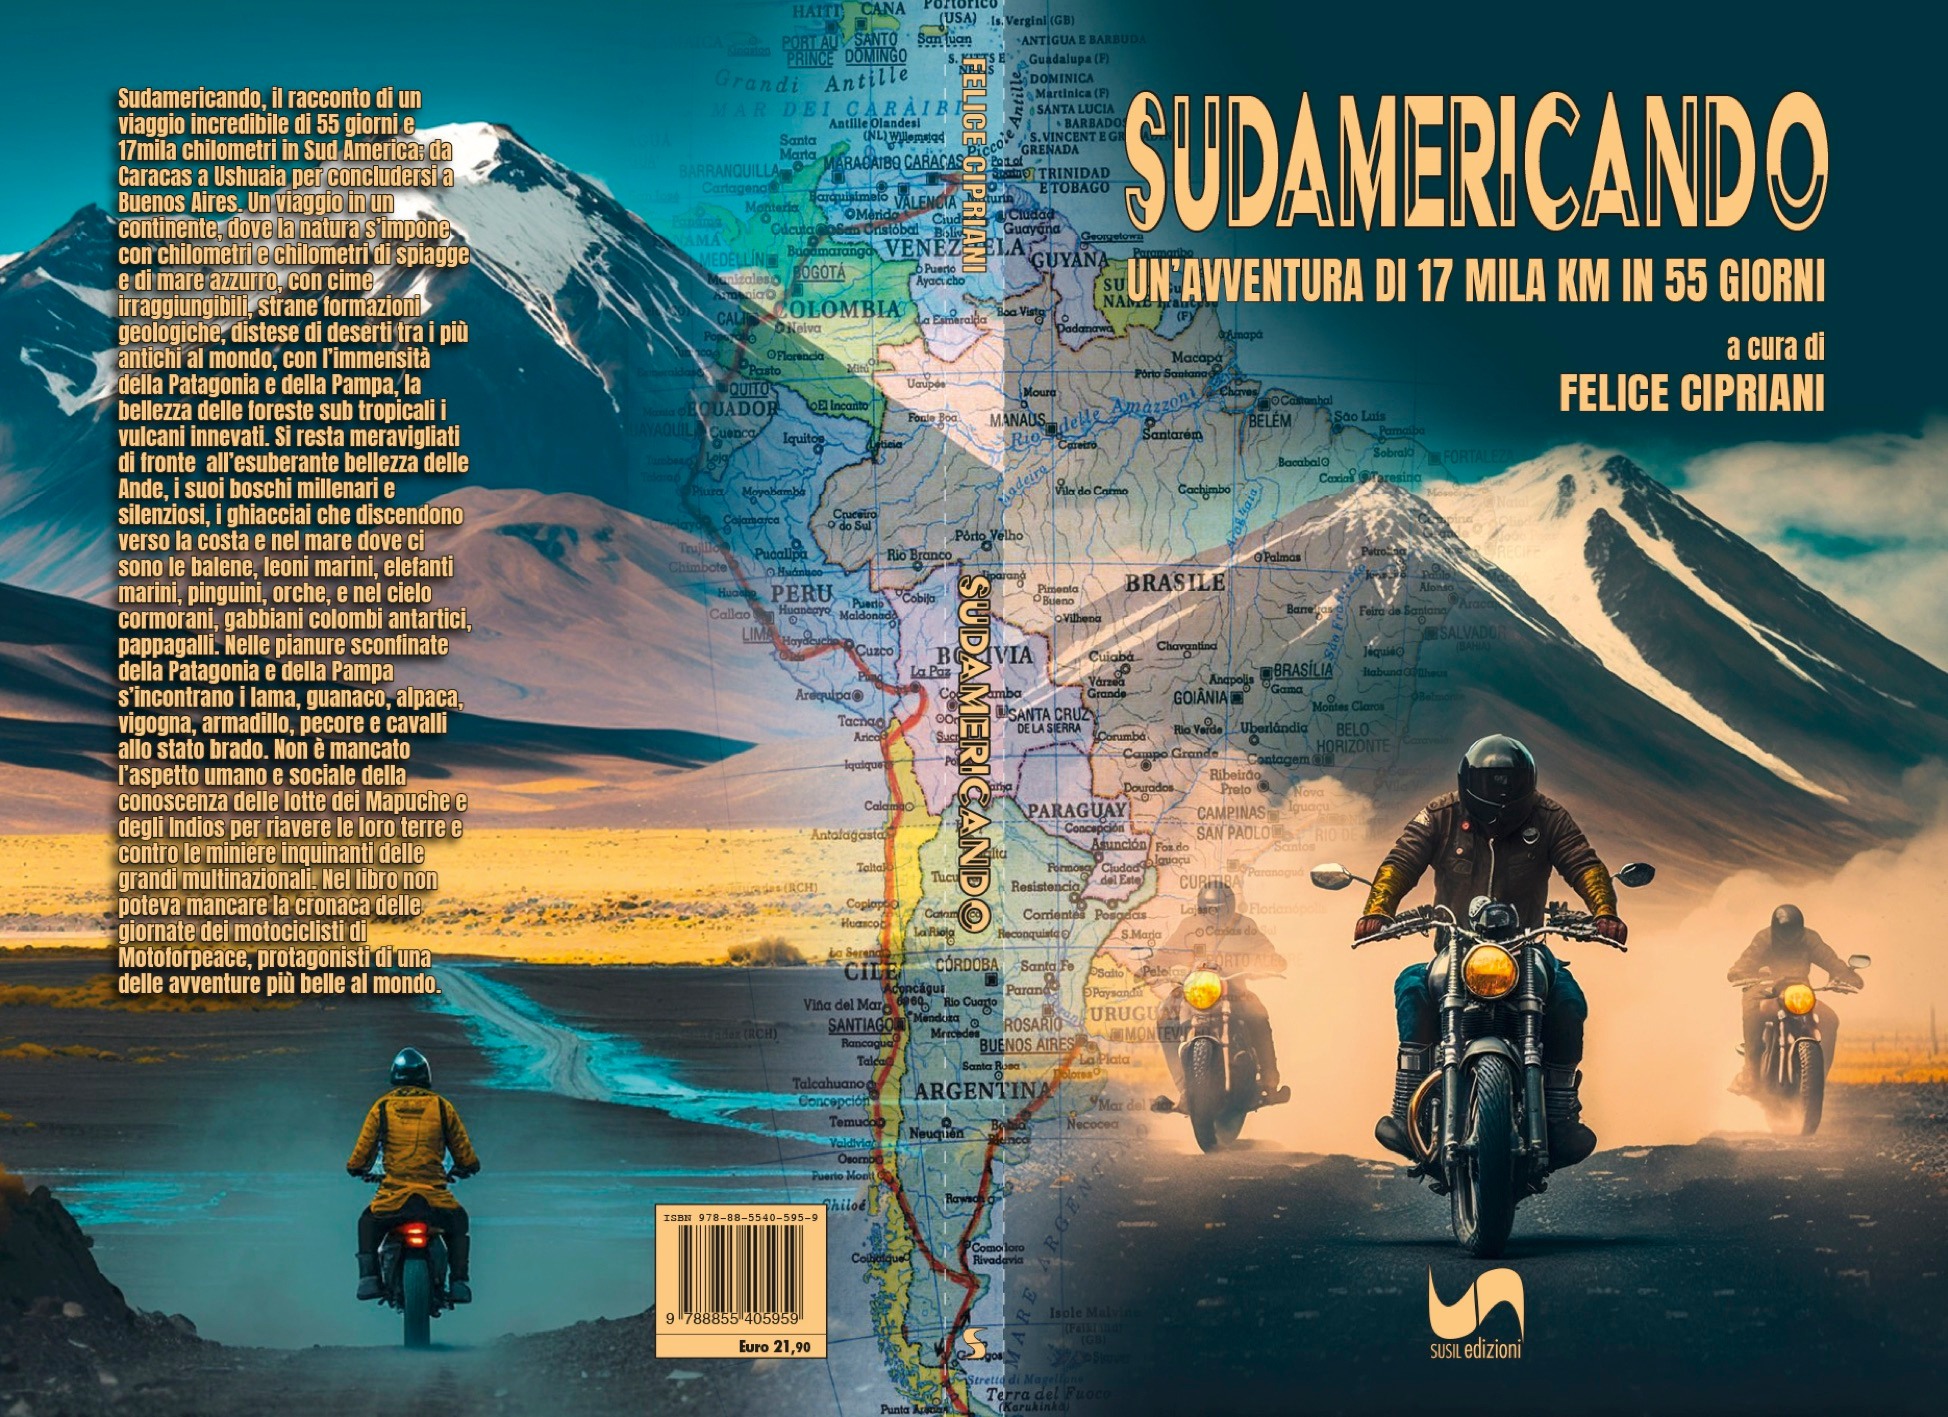 Sudamericando - il libro